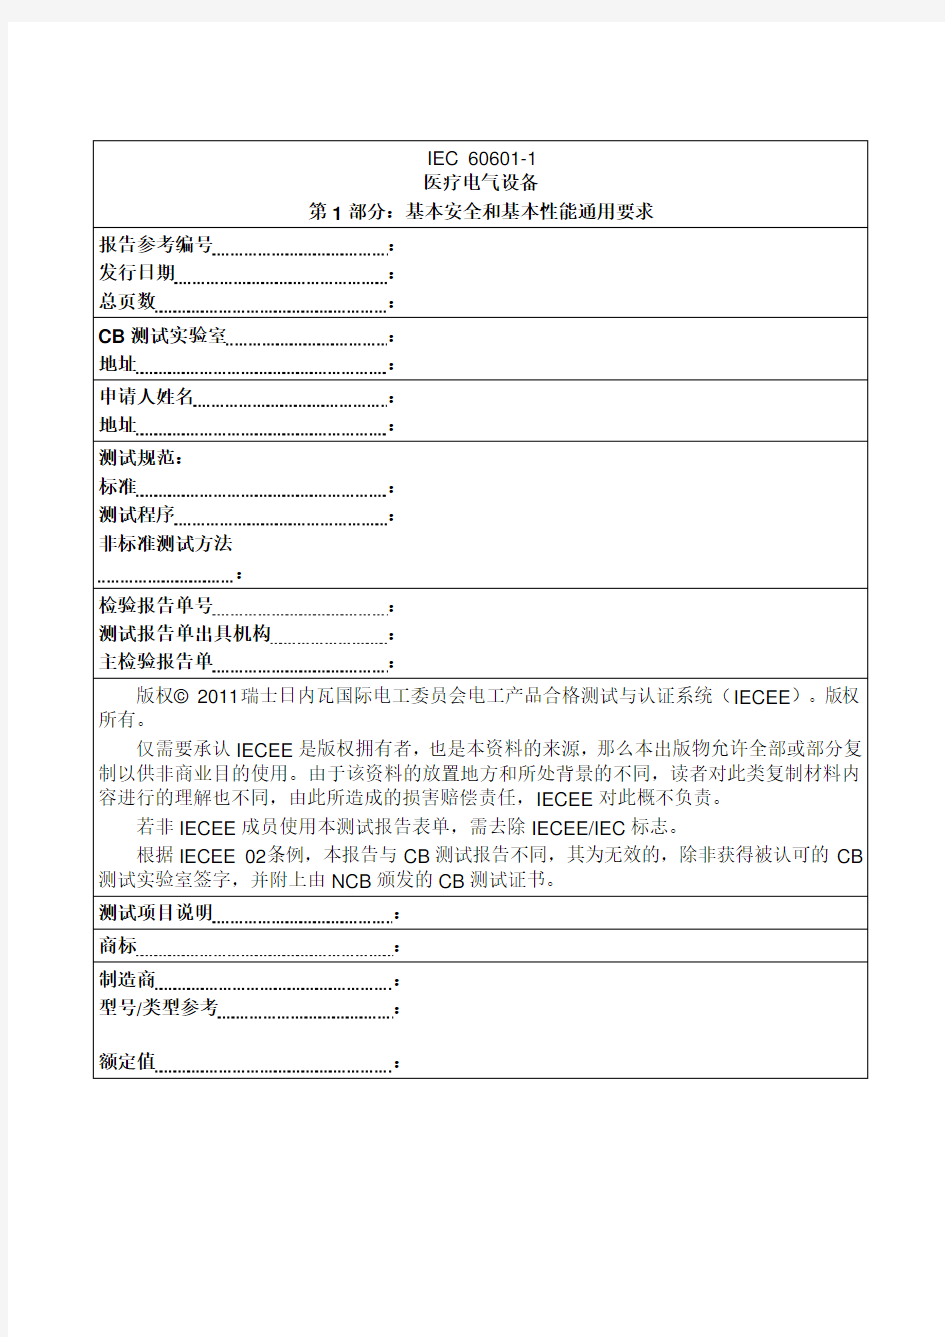 检测报告 IEC 60601-1中文版